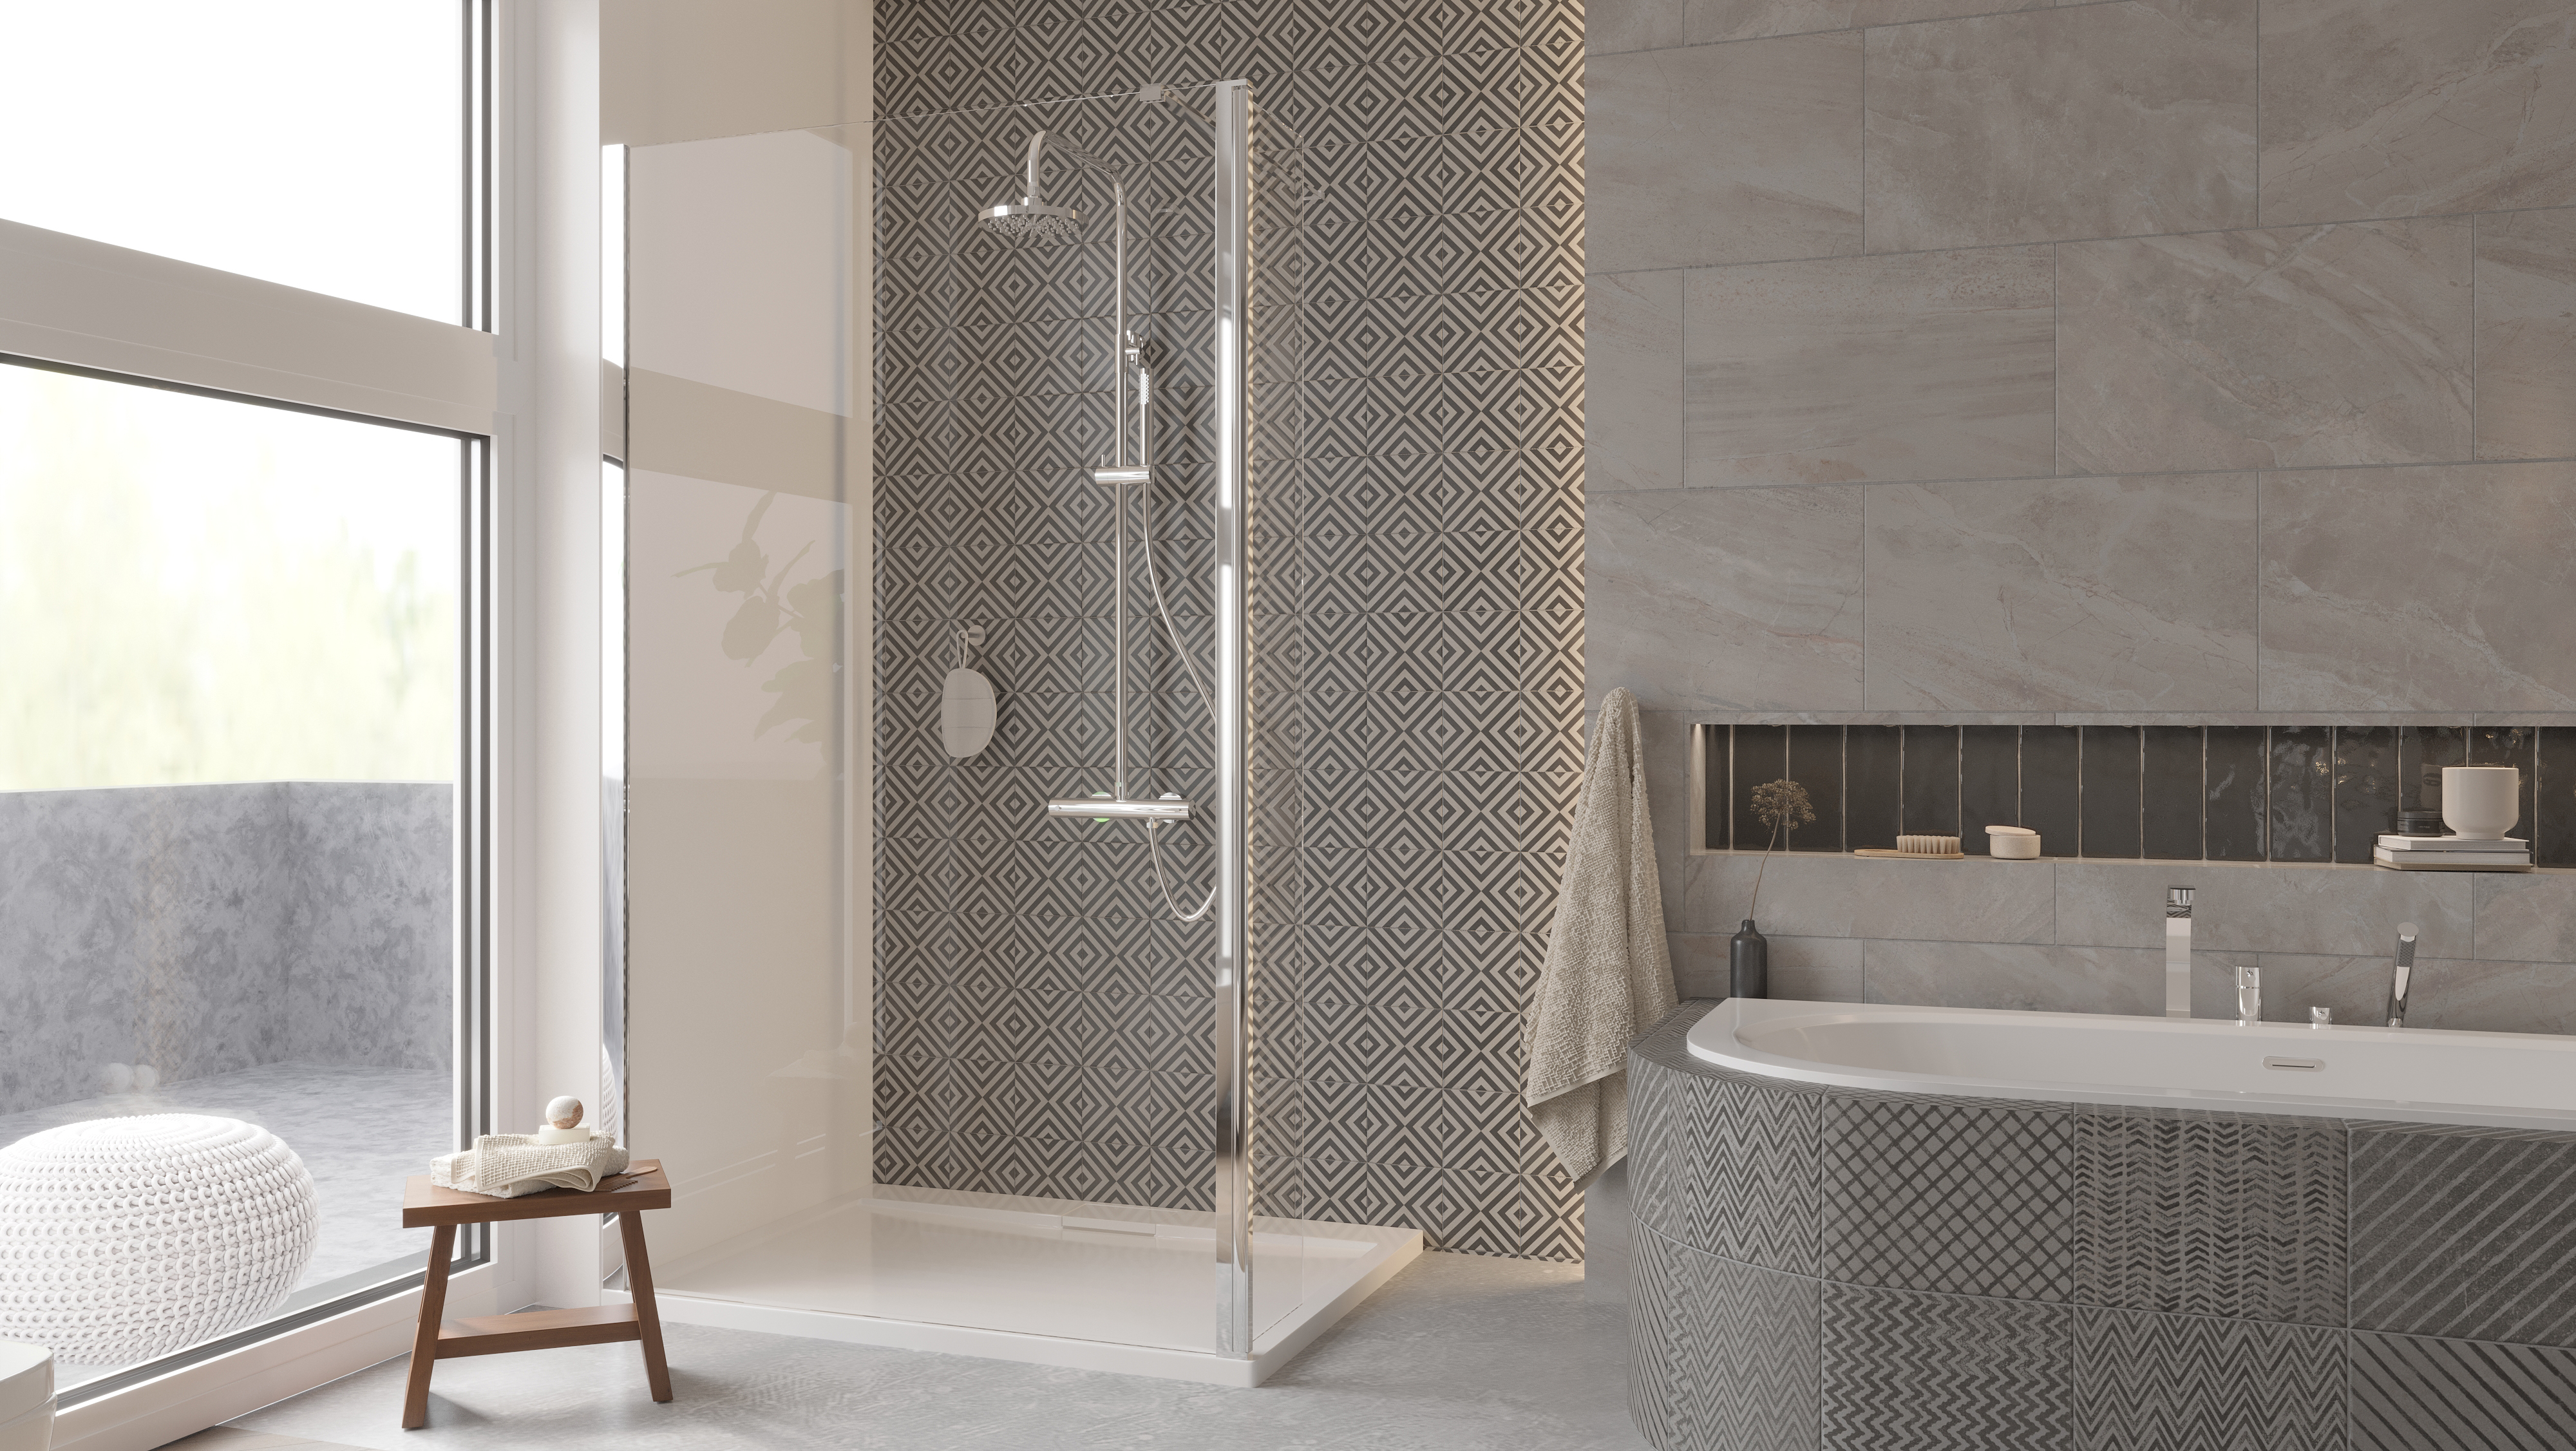 Besco Eco-N ścianka prysznicowa Walk-In 110 cm chrom/szkło przezroczyste EN-110-195C